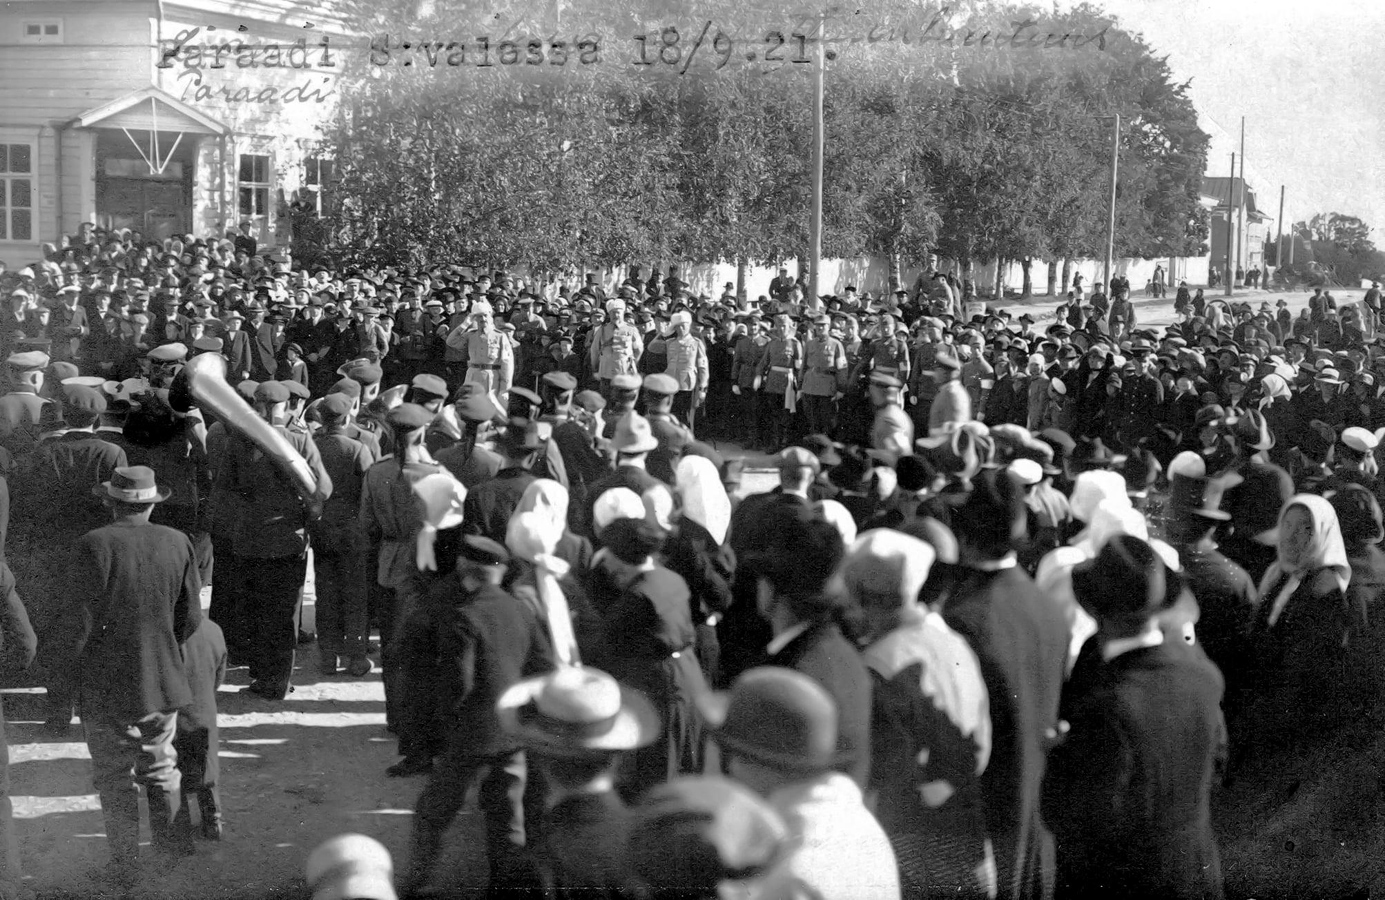 September 18, 1921. Sortavala. Parade